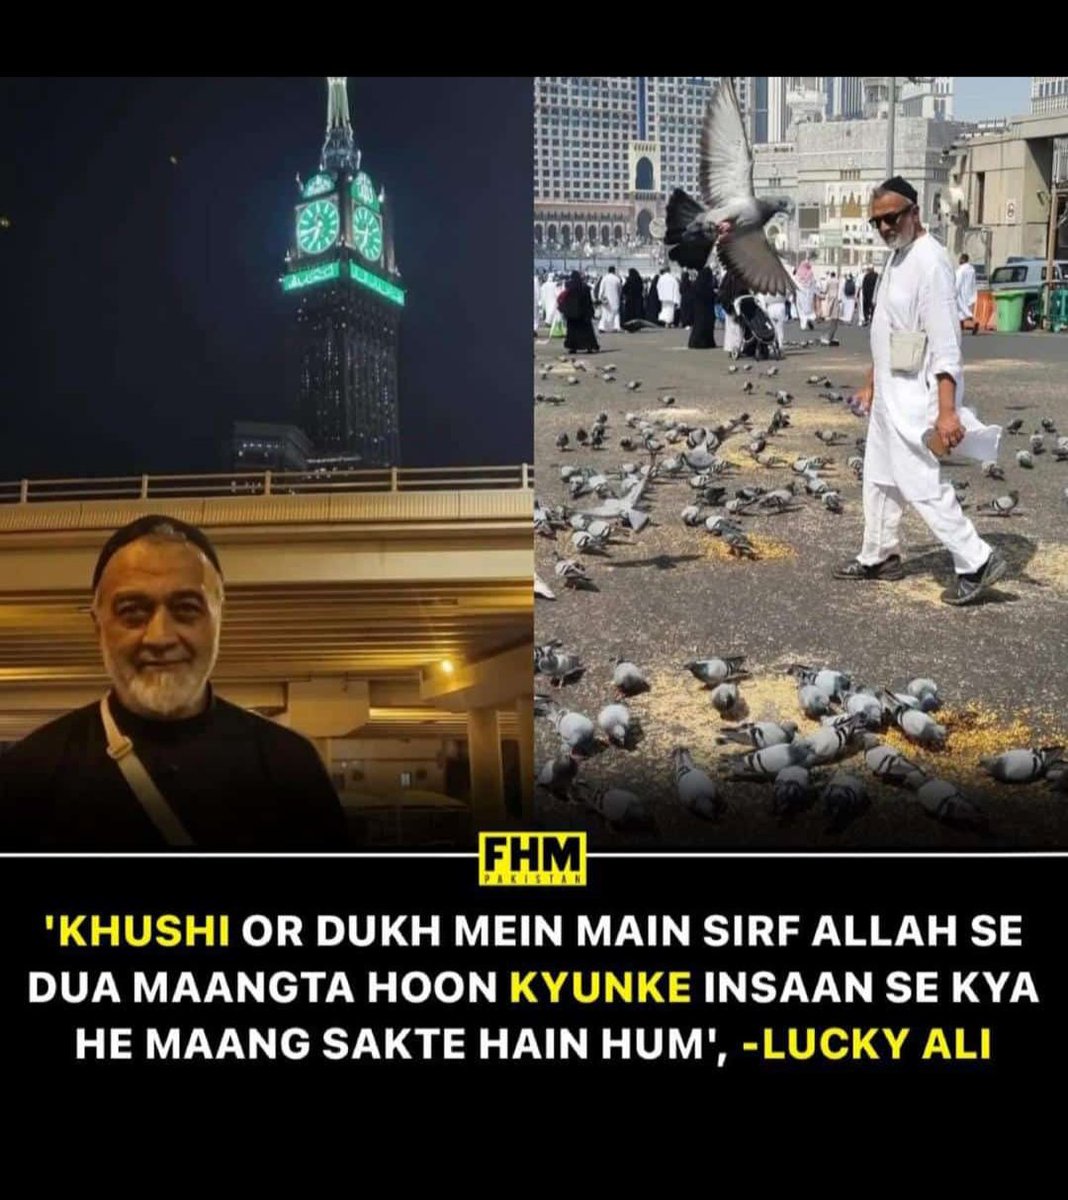 #AllahuAkbar#MakkahMukarmma#Muslims#powerofDua#